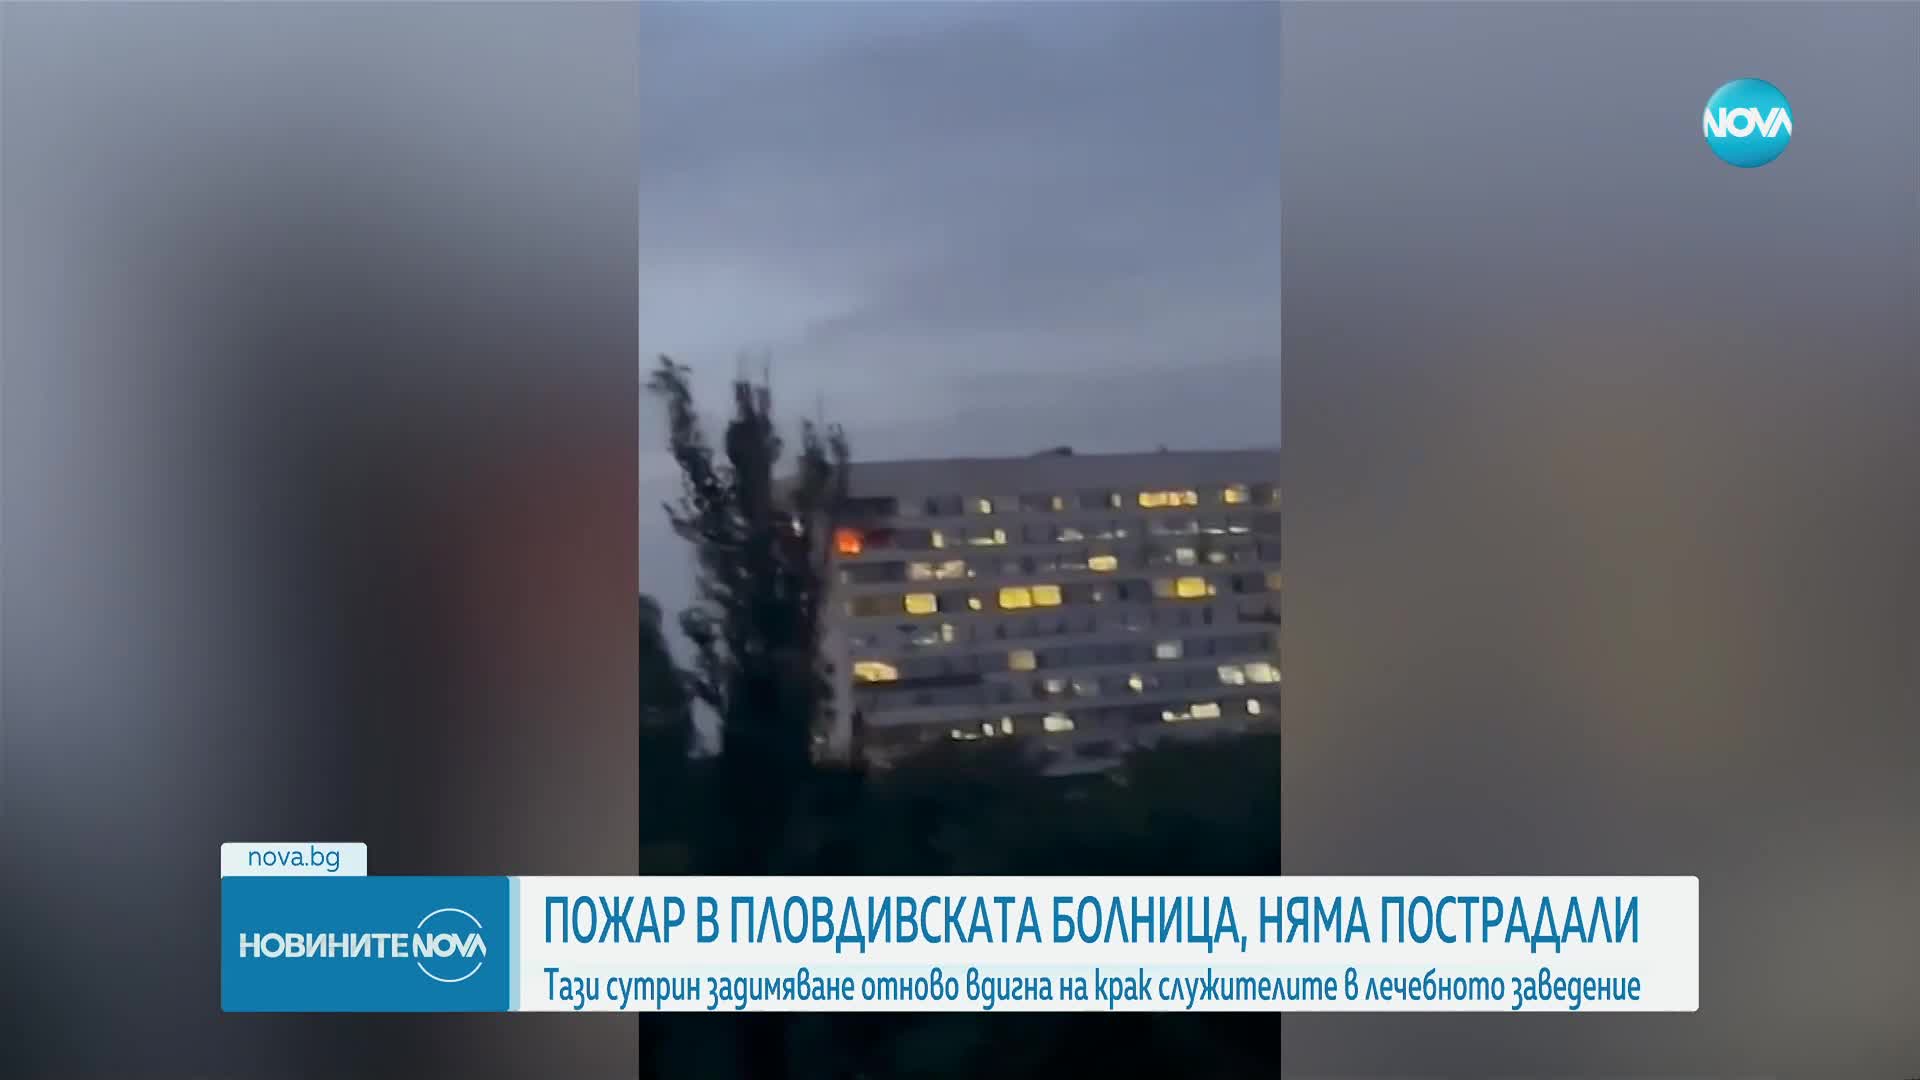 Каква е вероятната причина за пожара в болница в Пловдив